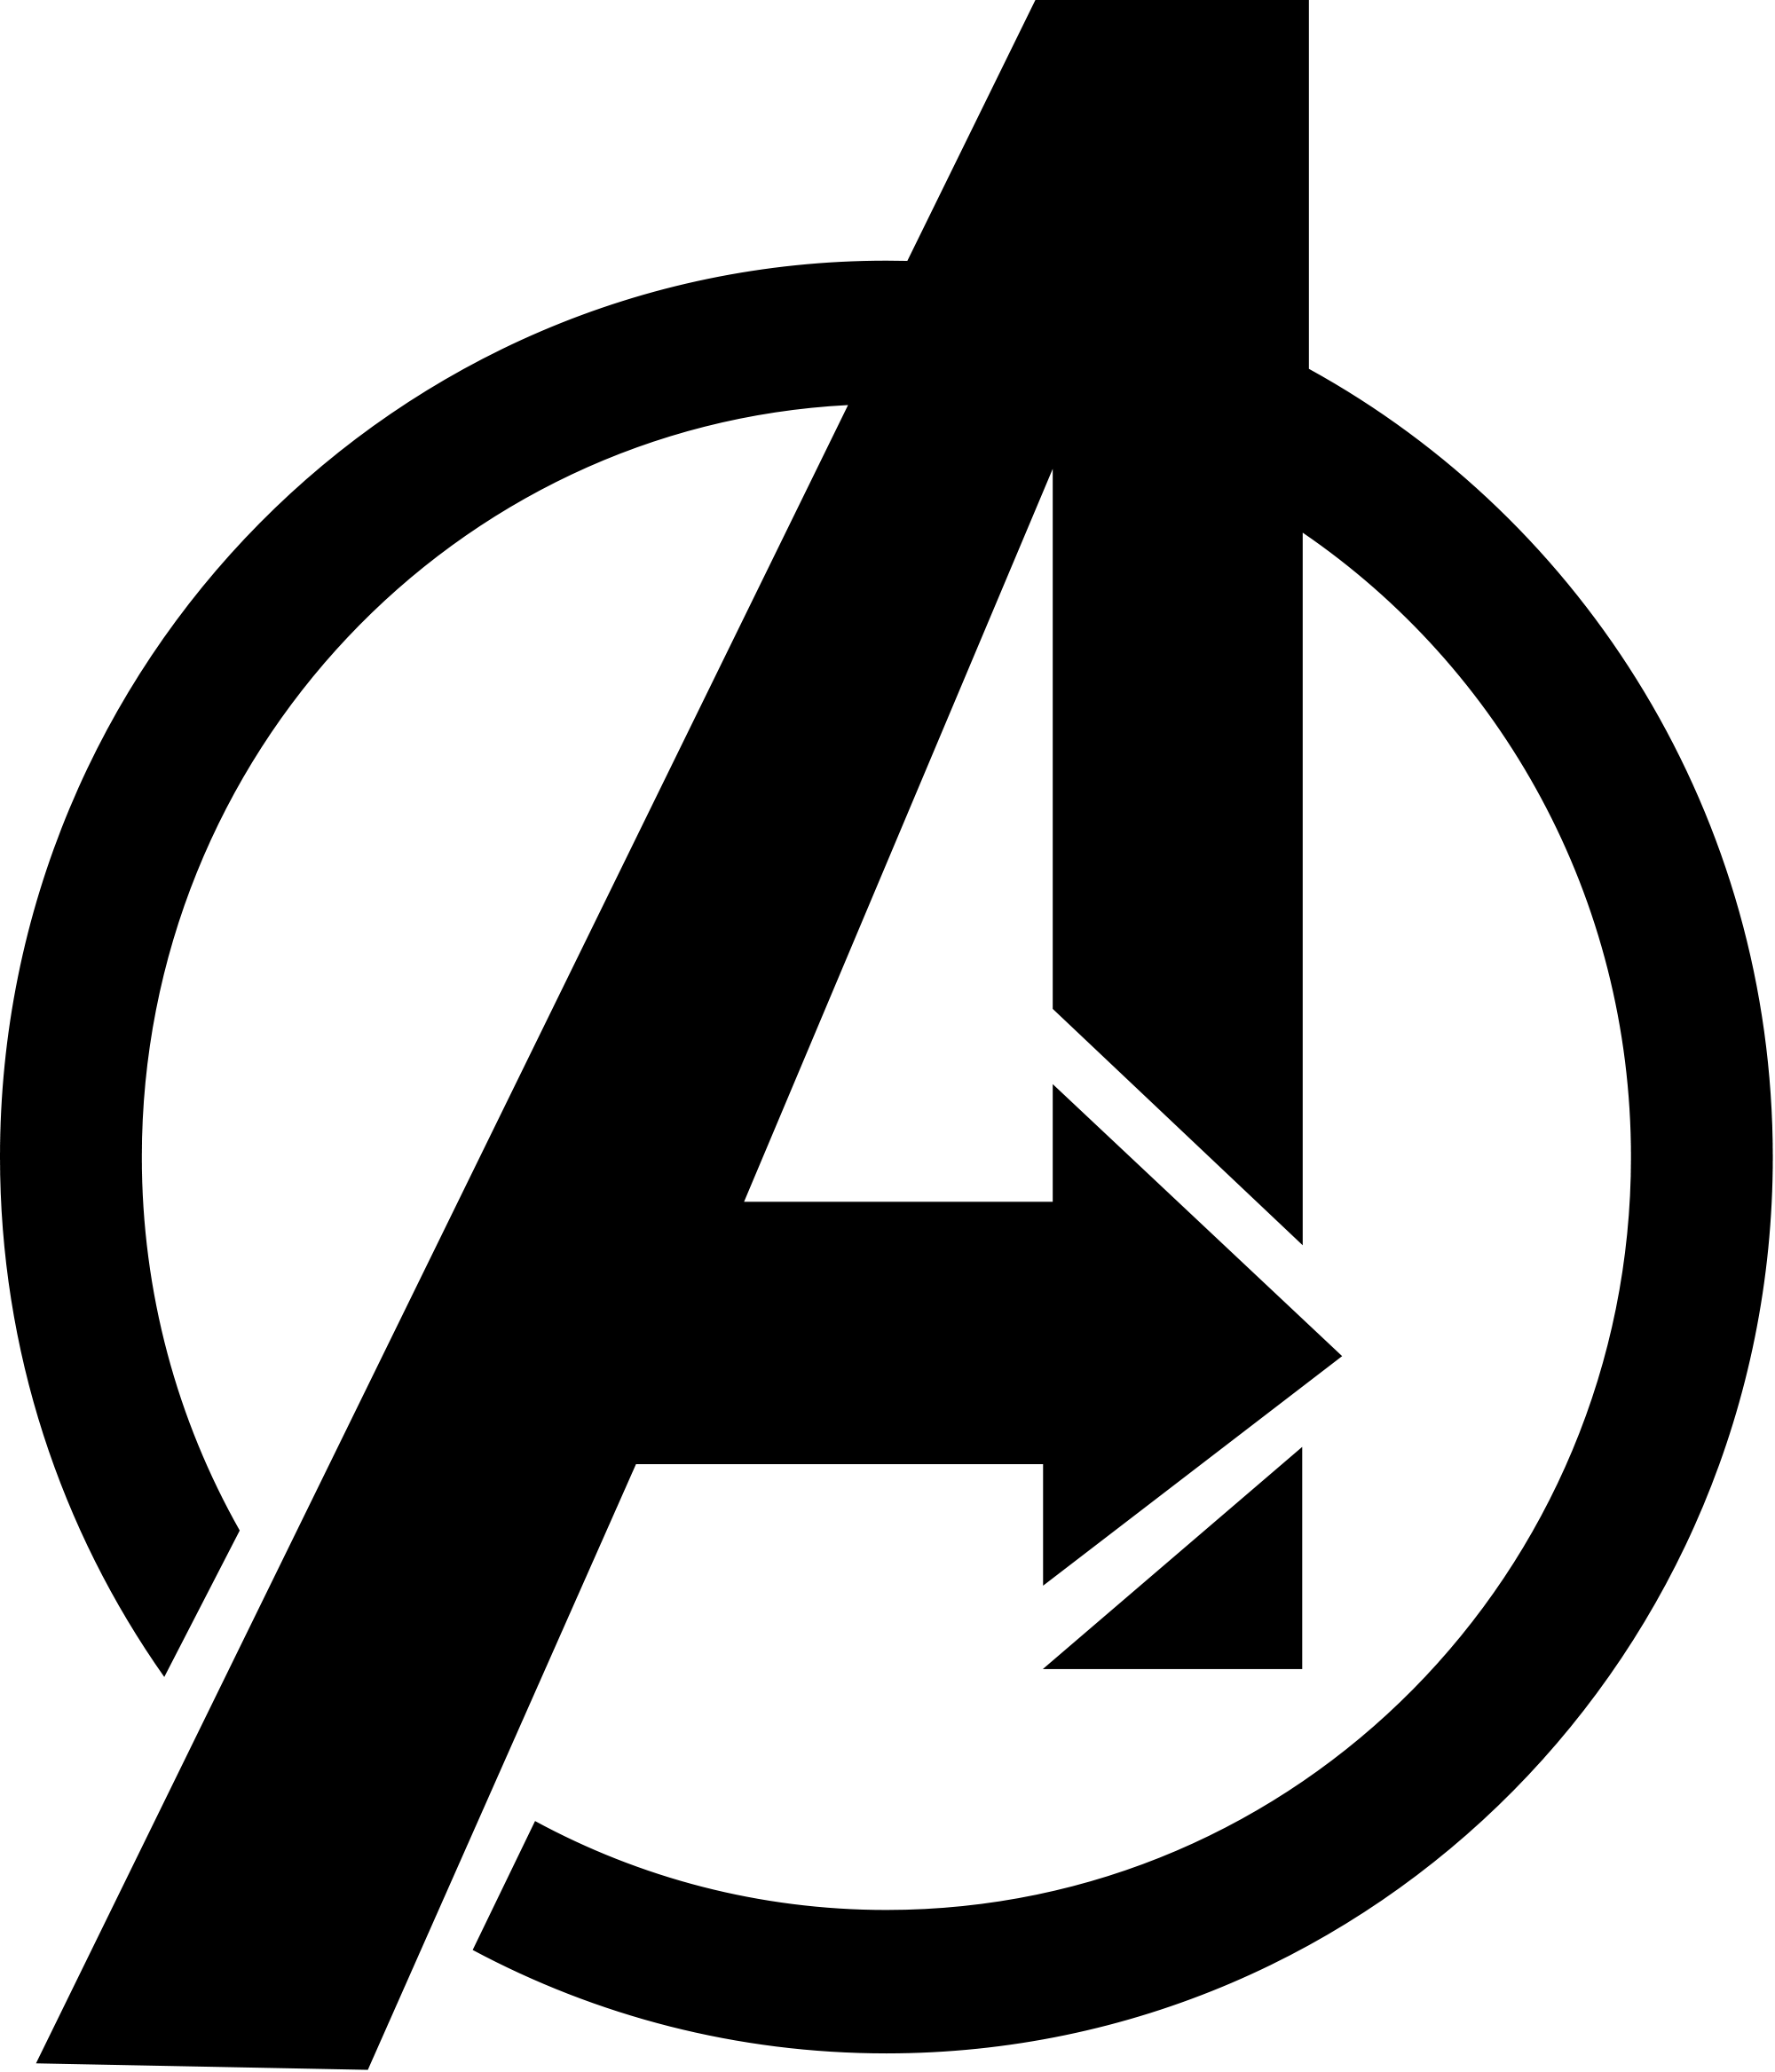 Avengers Logo - File:Symbol from Marvel's The Avengers logo.svg - Wikimedia Commons